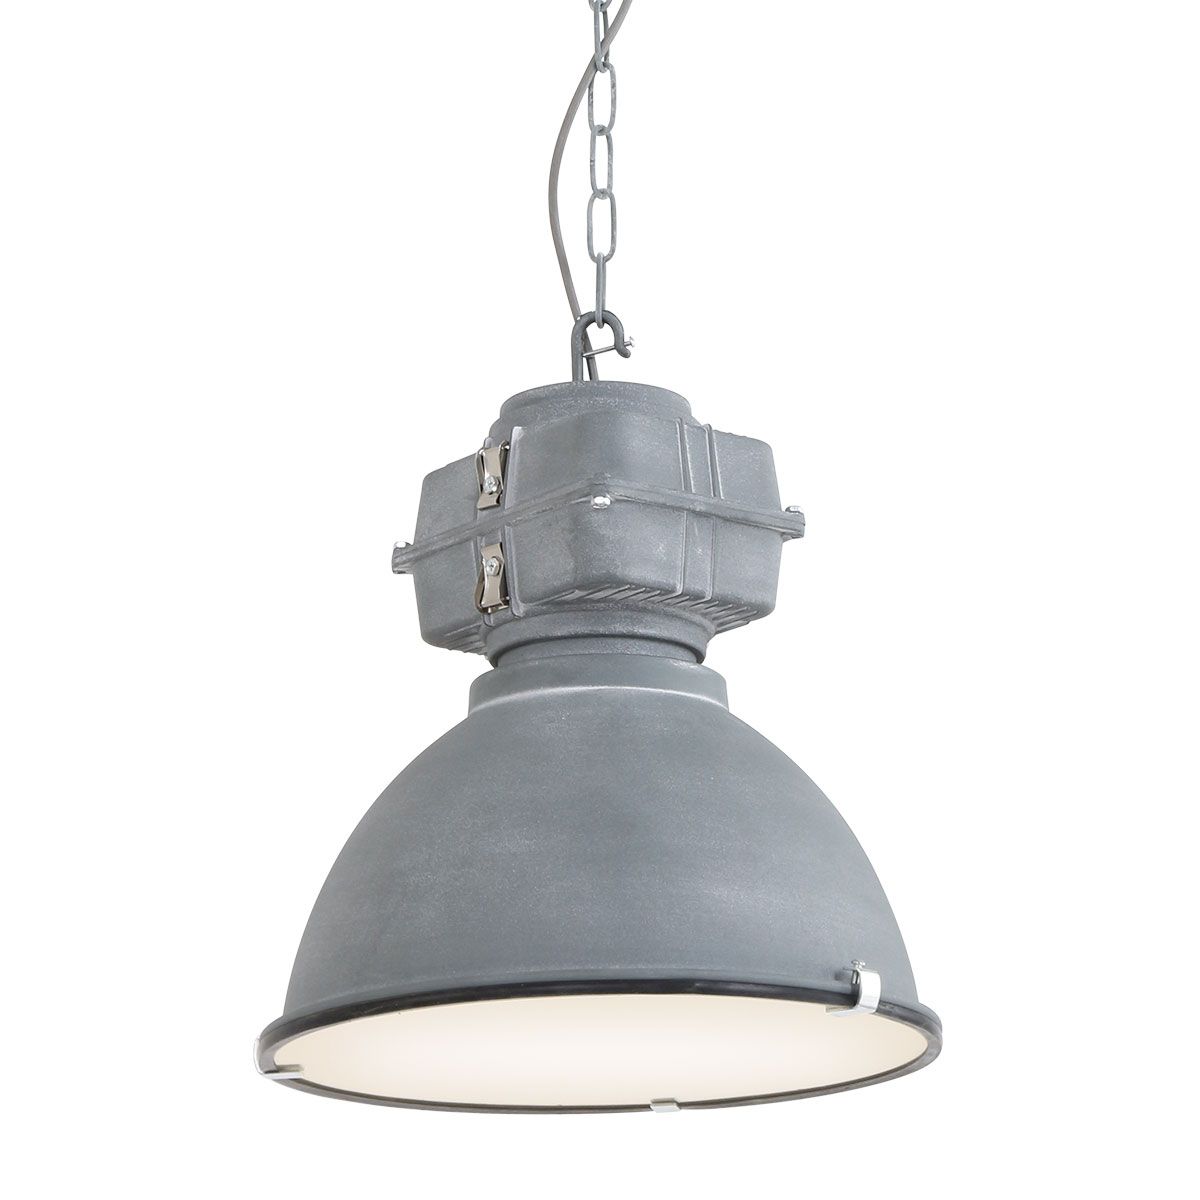 Billede af Bale - industri loftlampe i grå eller sort metal, skærmdiameter 38 cm. Metal - grå